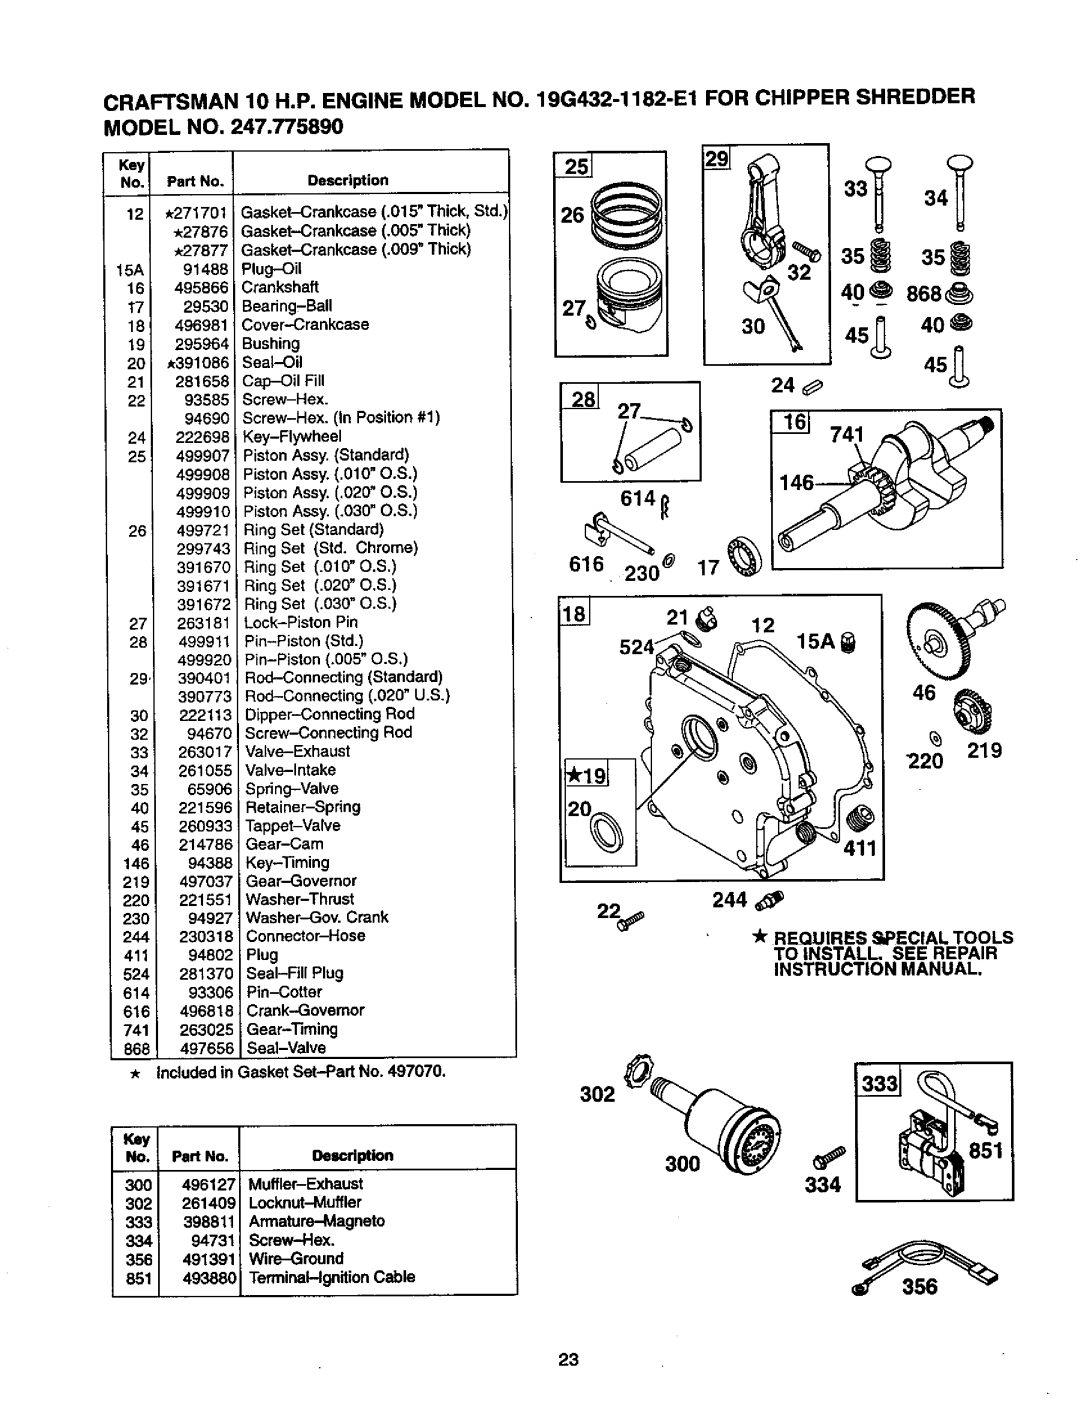 Craftsman 247.775890 manual CRAFTSMAN 10 H,P. ENGINE MODEL NO. MODEL NO, 19G432-1182-E1FOR CHIPPER SHREDDER 614_ 616 21 _ 